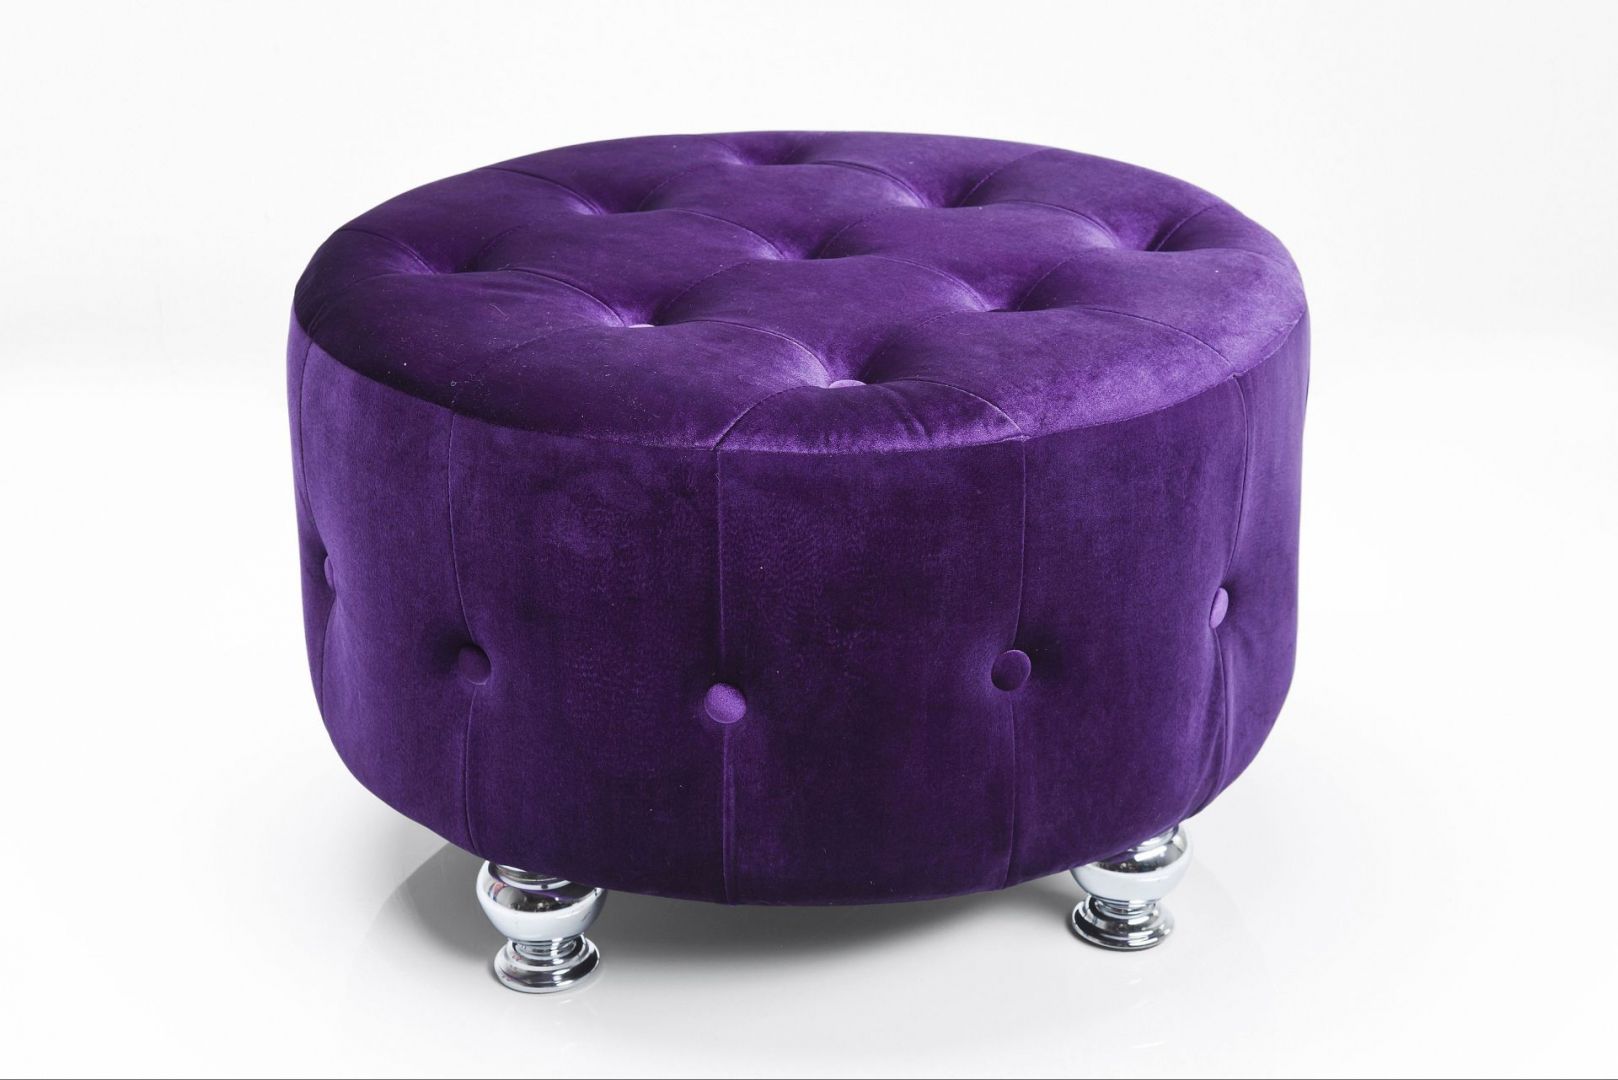 Pufa Opulence purple to elegancki dodatek do sypialni. Można na niej usiąść podczas nakładania garderoby lub coś położyć. Fot. Kare Design